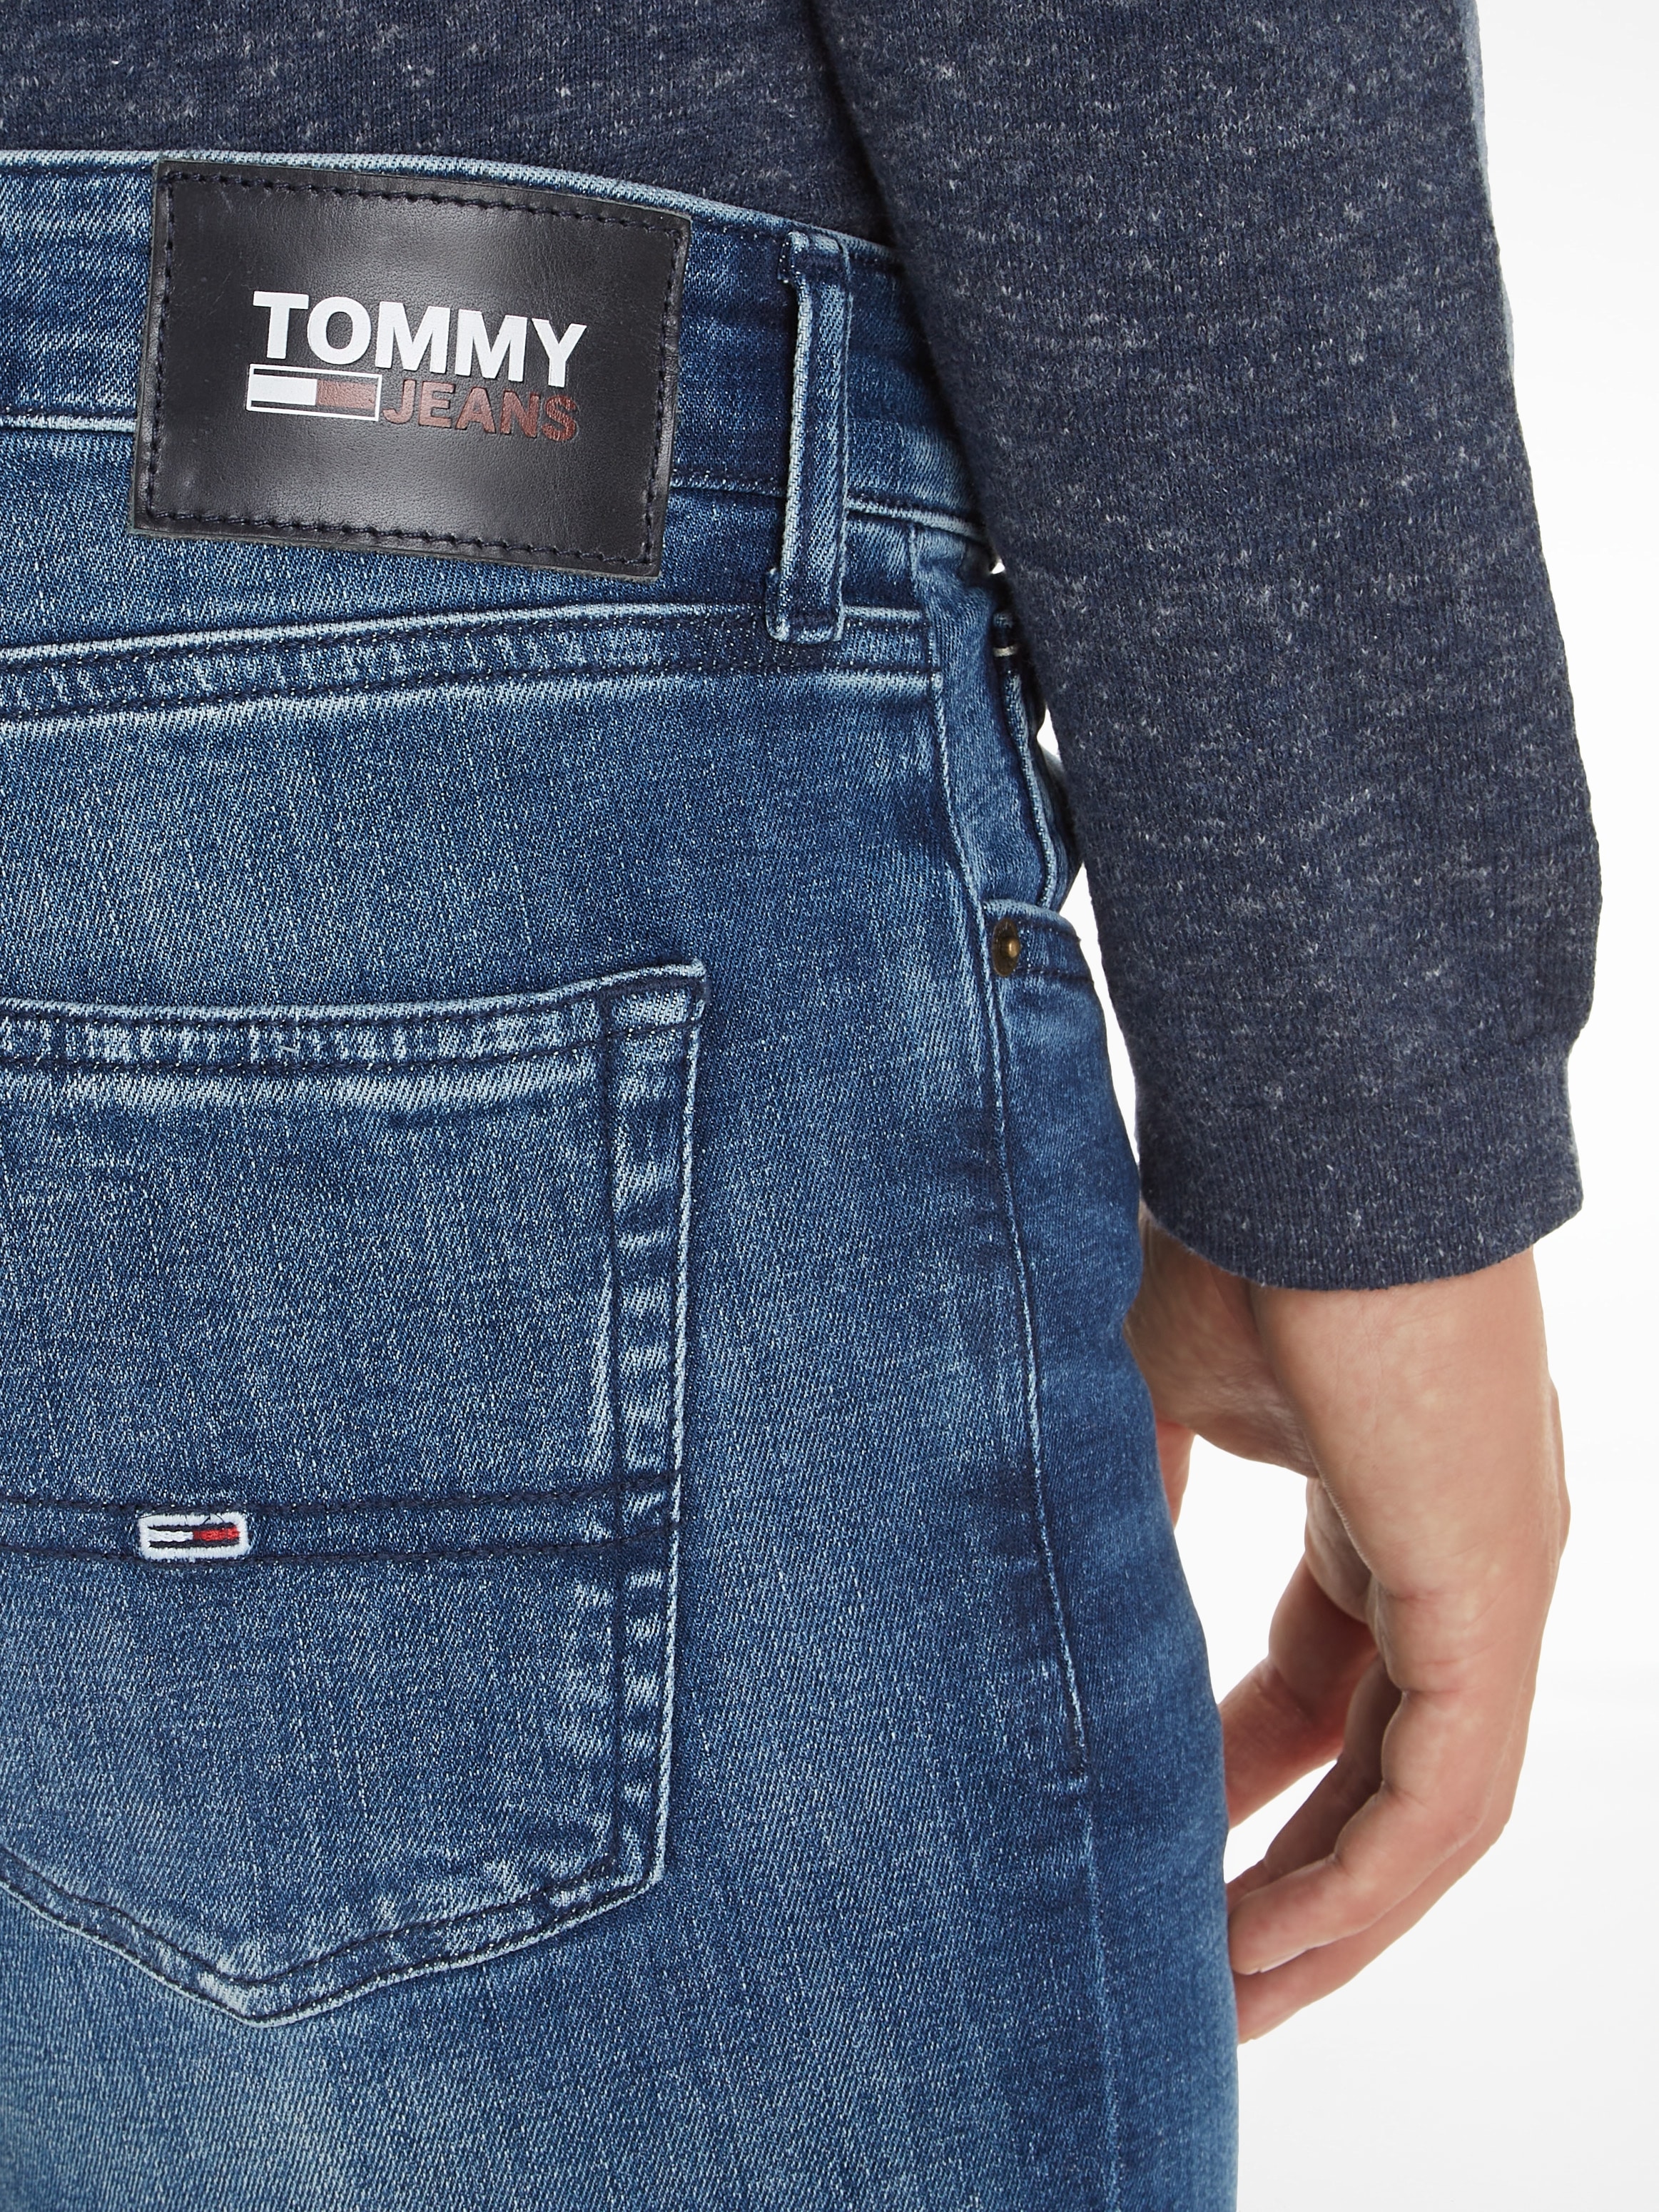 Jeans bei Tommy OTTO »SCANTON Slim-fit-Jeans SLIM« online kaufen